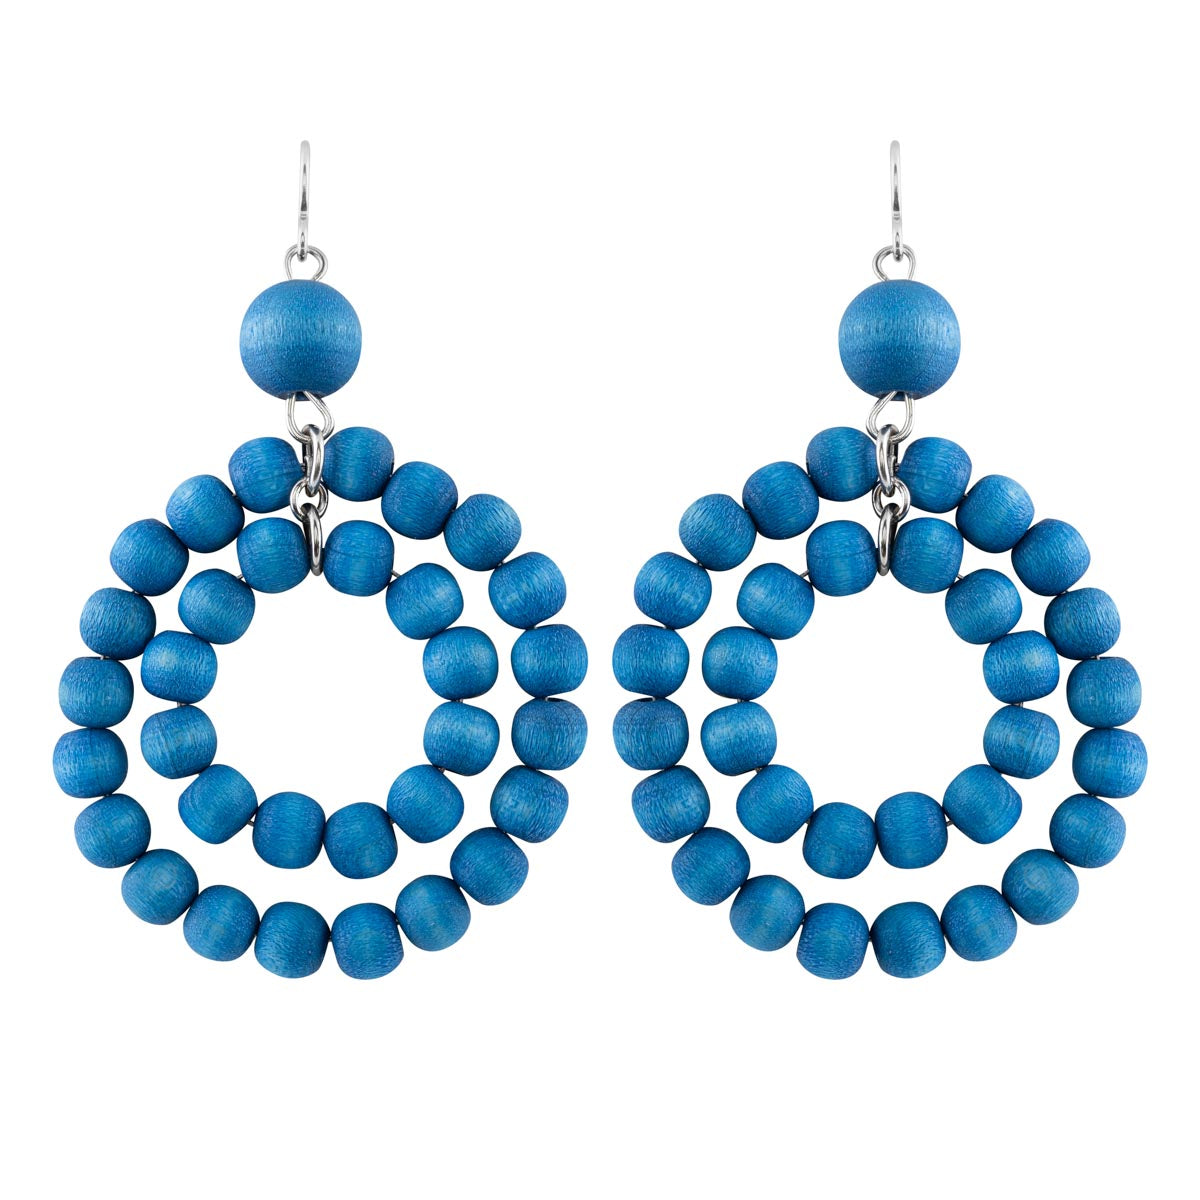 Orkidea earrings, blue